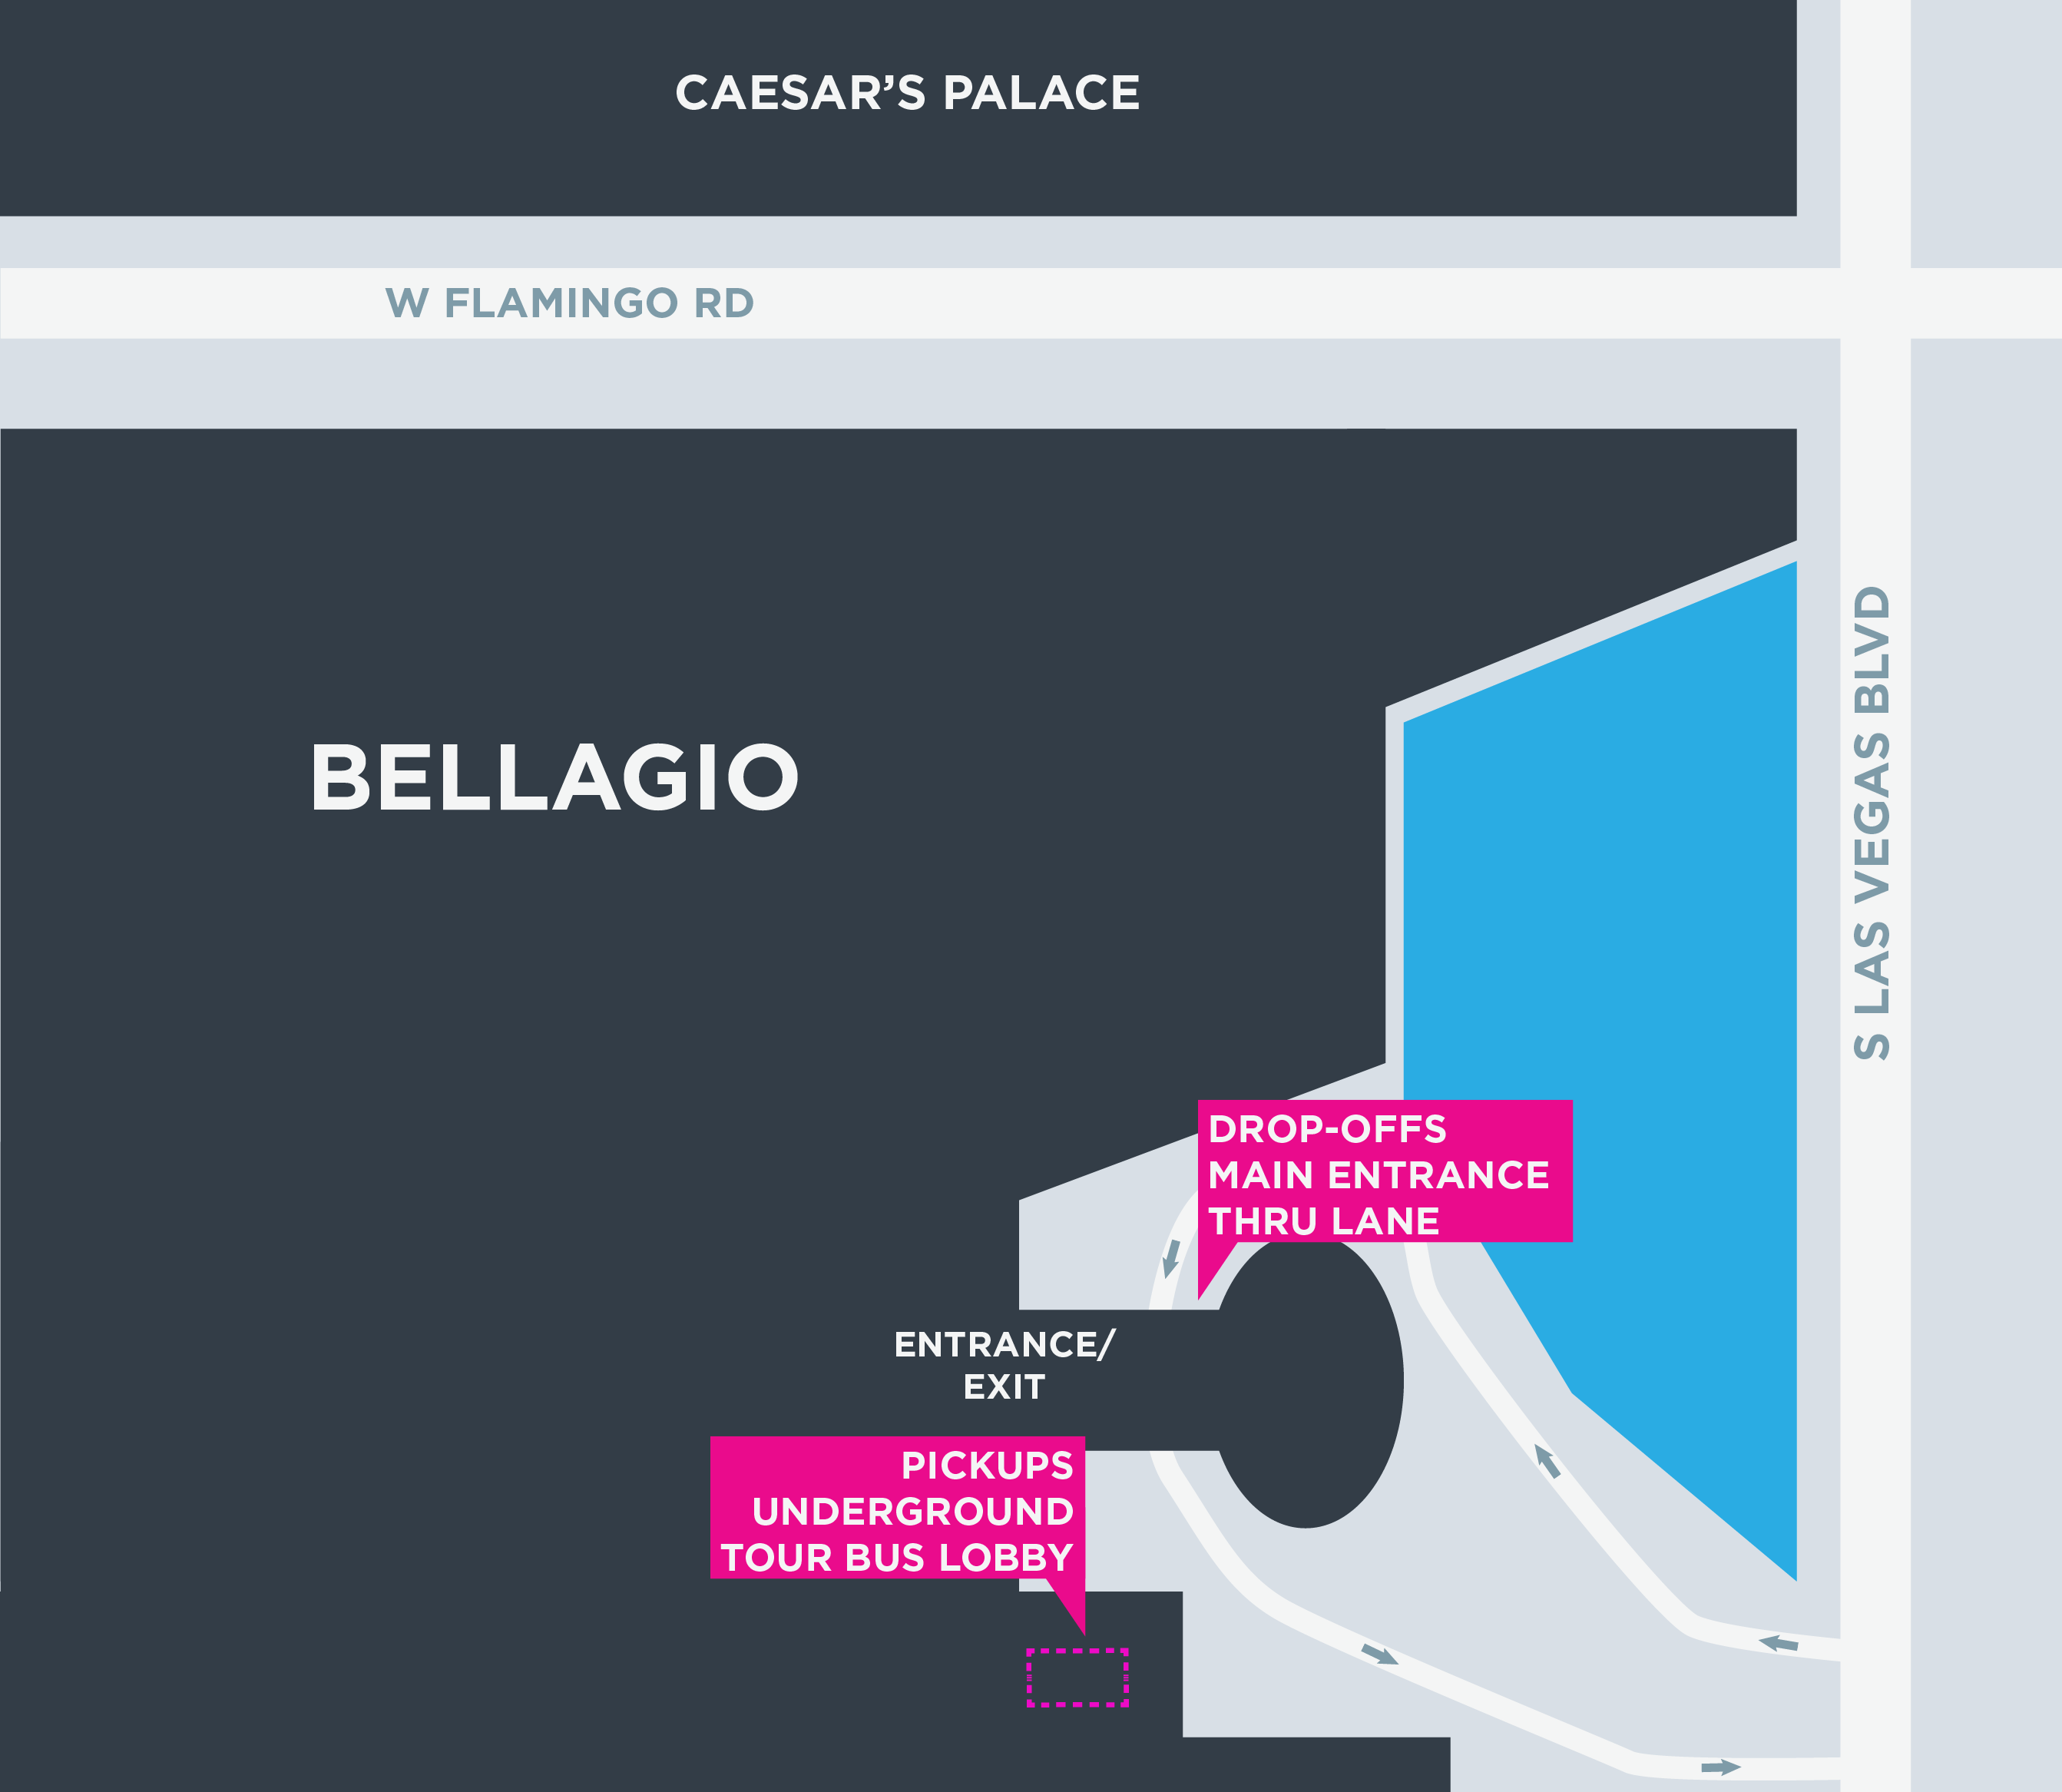 Esta imagen muestra un mapa de Bellagio, incluidas las áreas para recoger y dejar pasajeros.